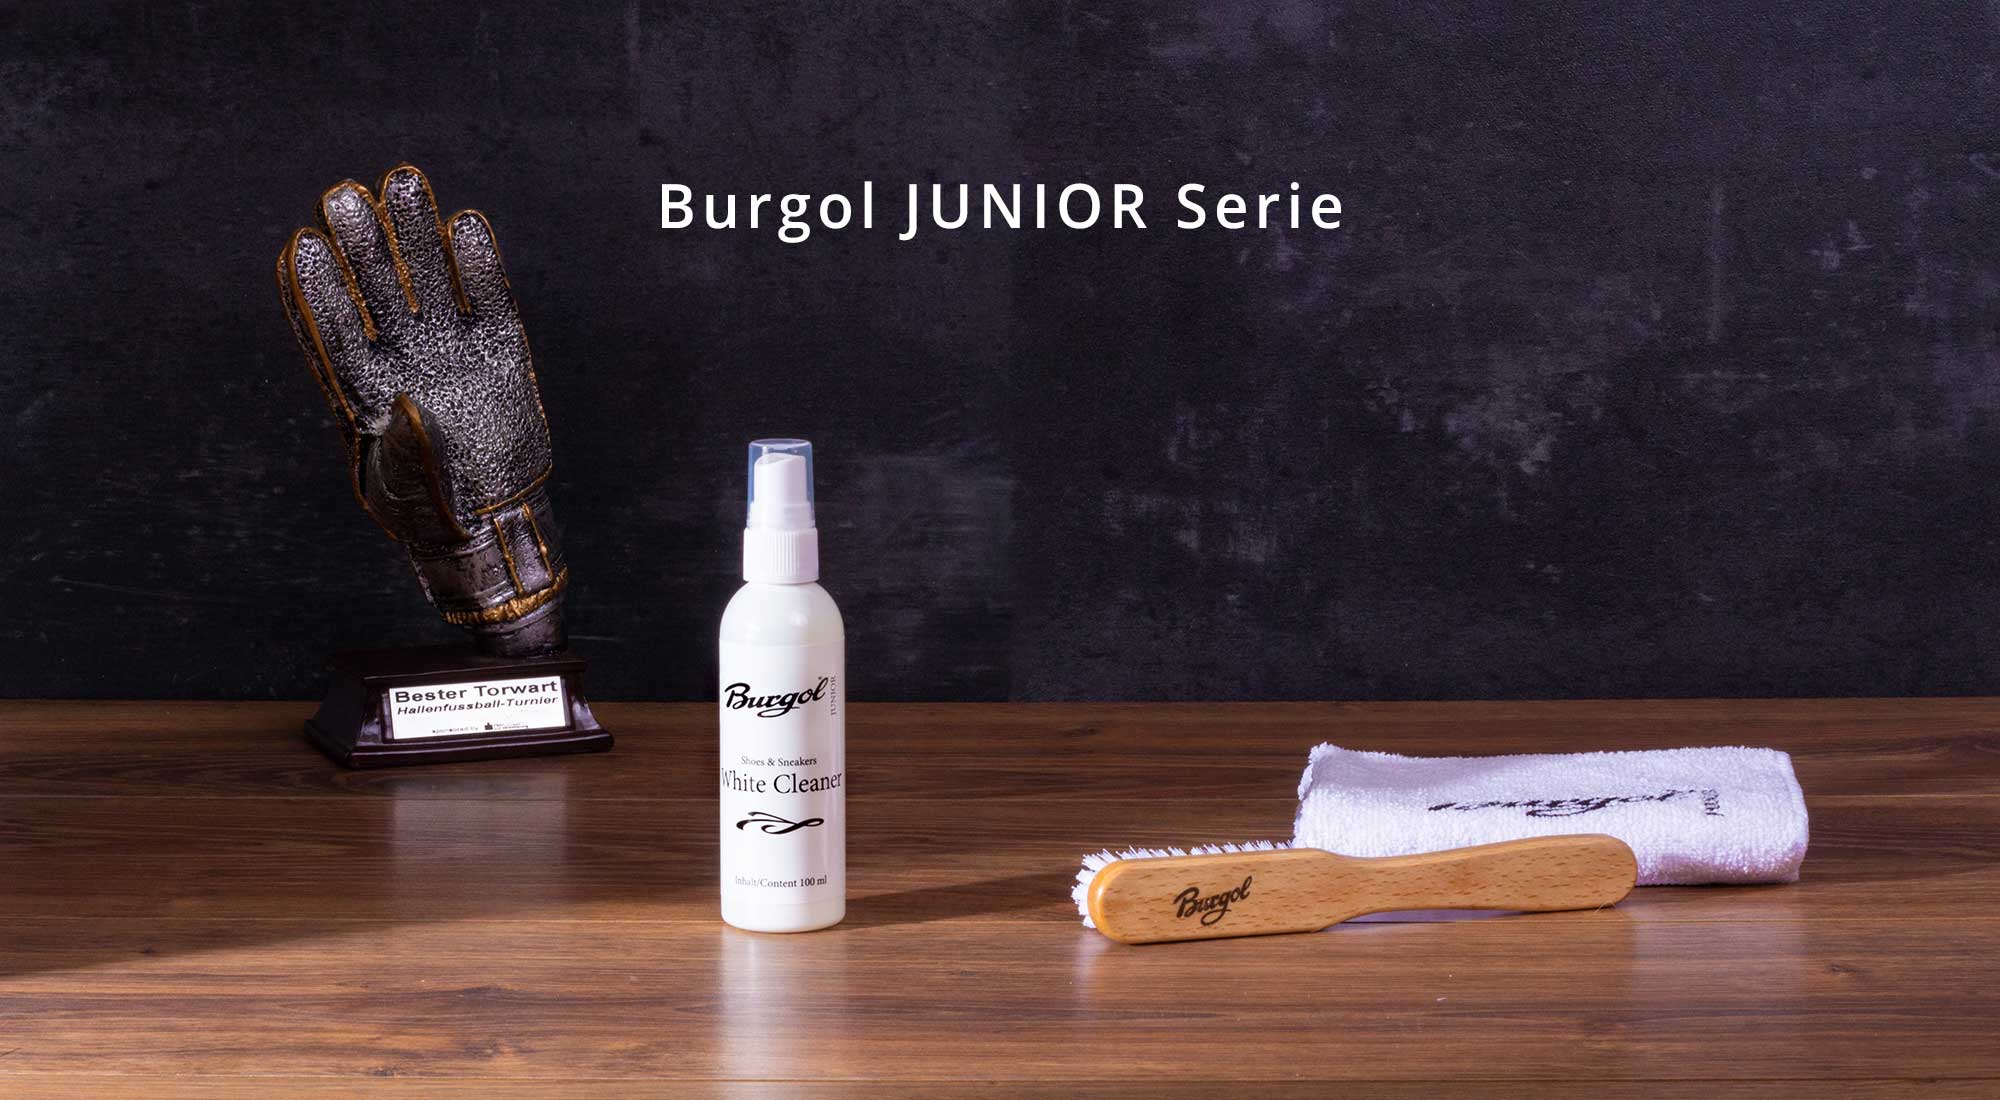 images/sb-kategorie/burgol-junior-serie-k.jpg